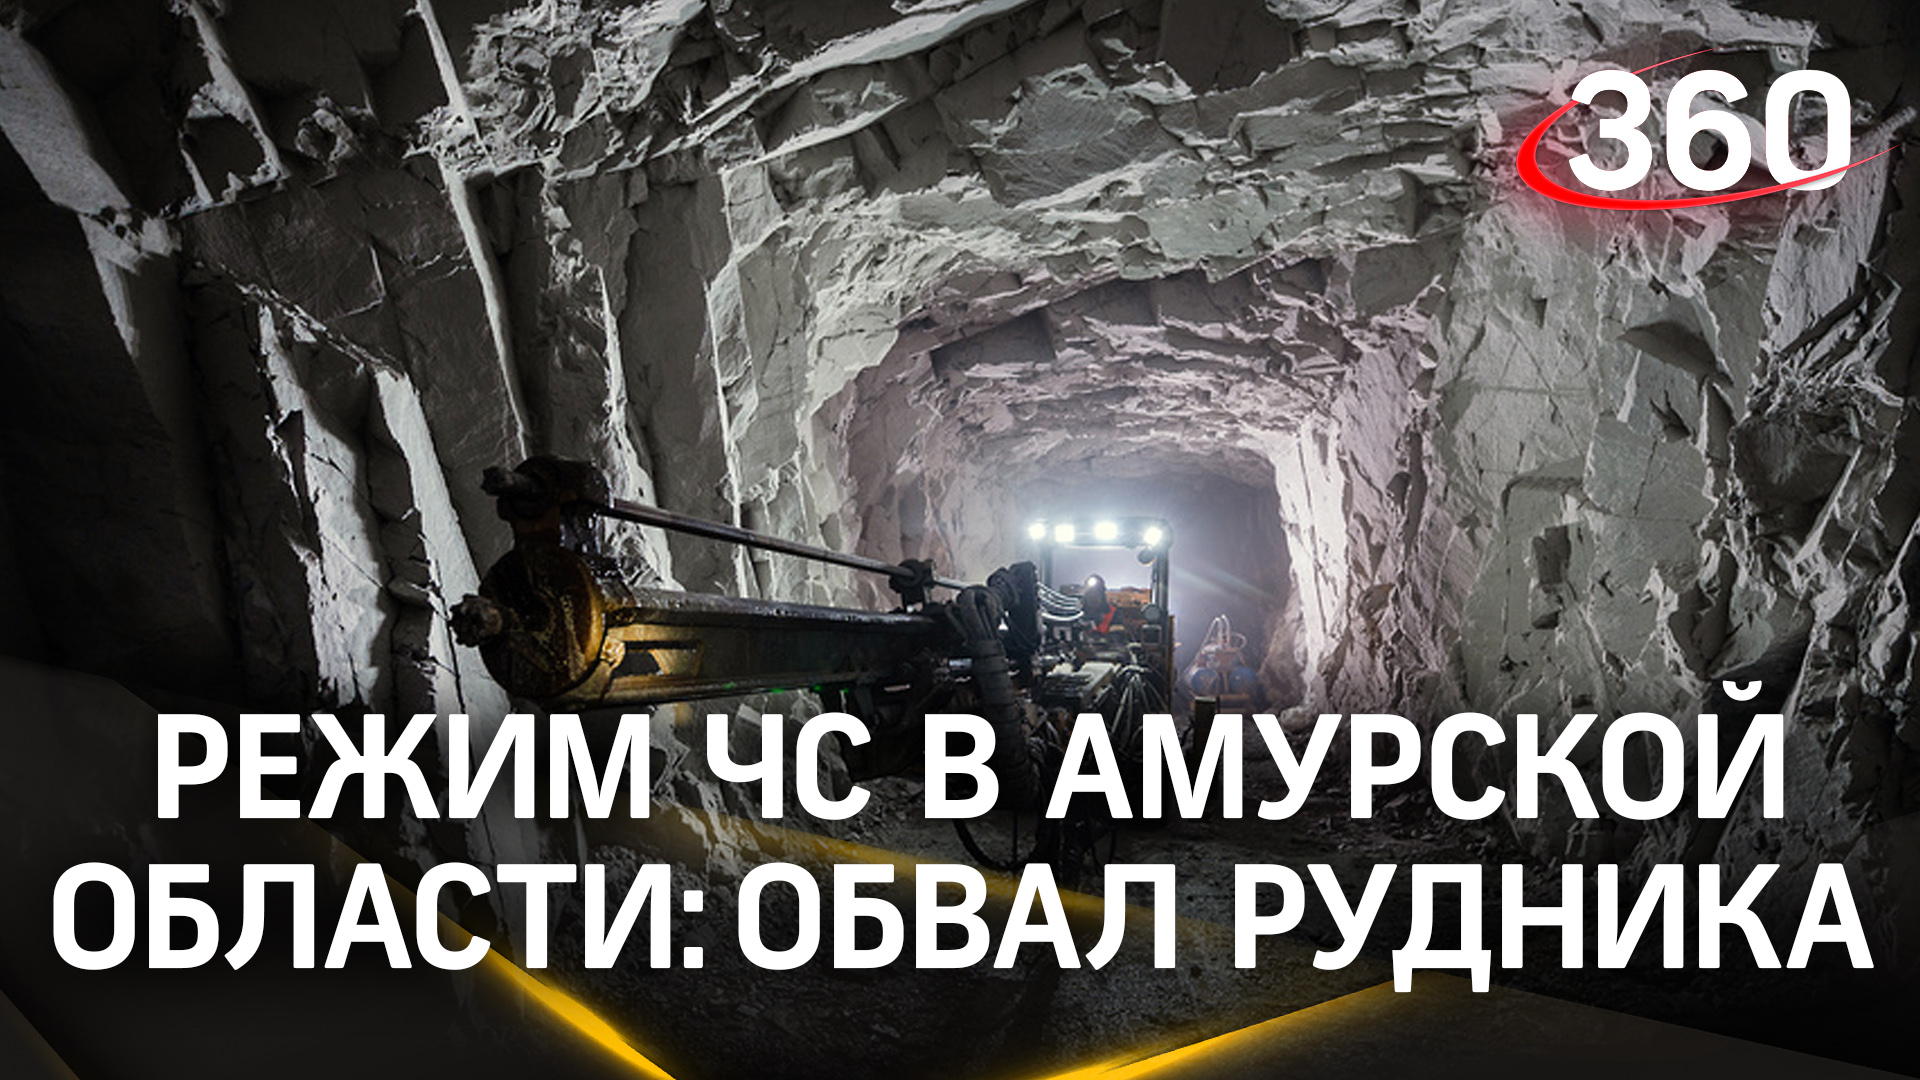 Обвал рудника в Амурской области — под завалами 13 человек. Введён режим ЧС